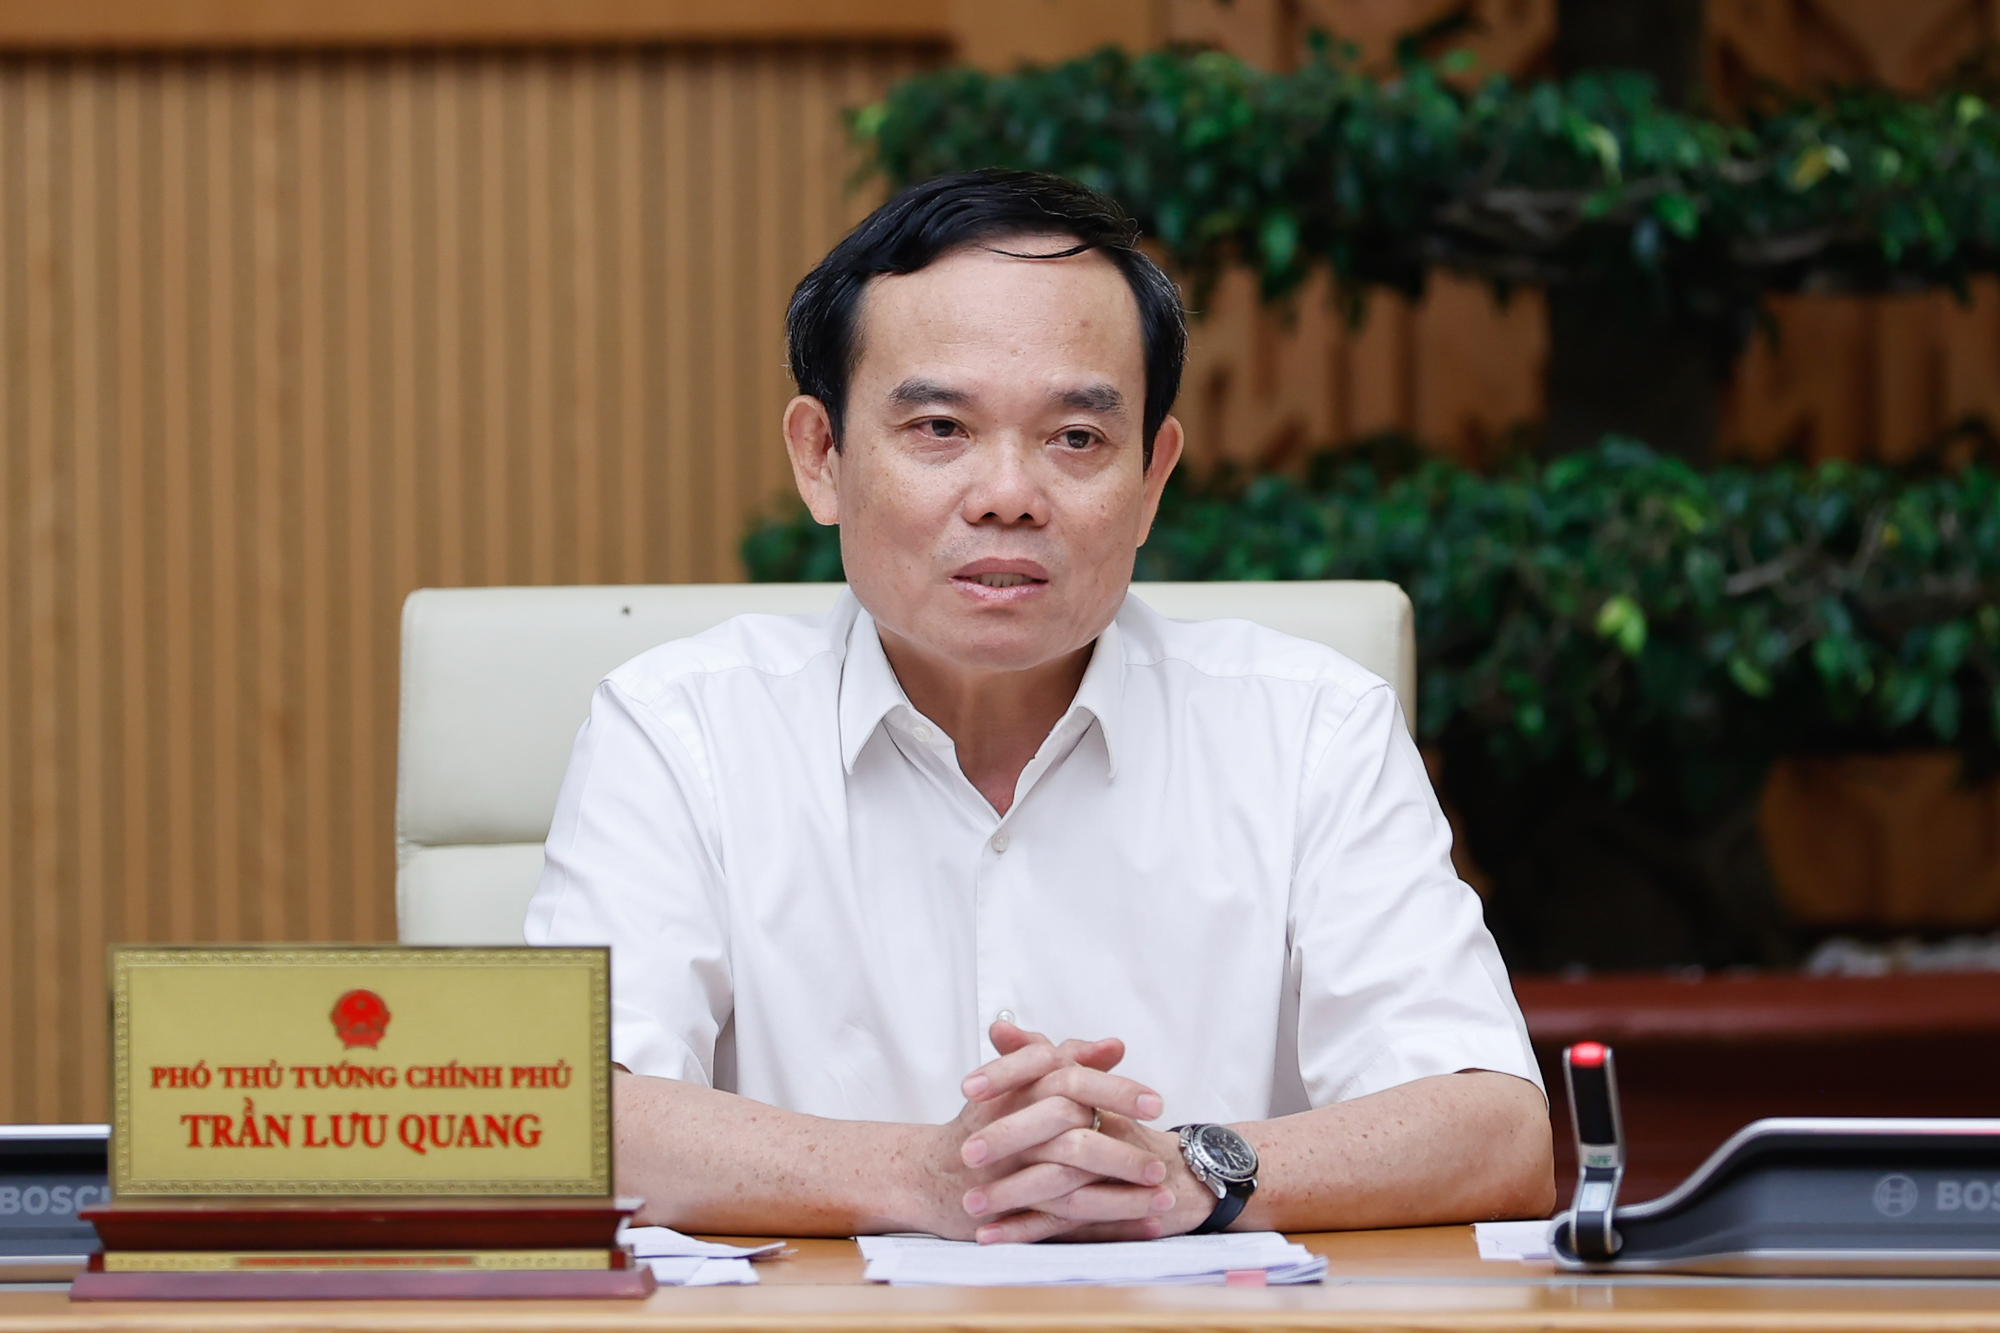 Phó Thủ tướng Trần Lưu Quang phát biểu tại phiên họp - Ảnh: VGP/Nhật Bắc